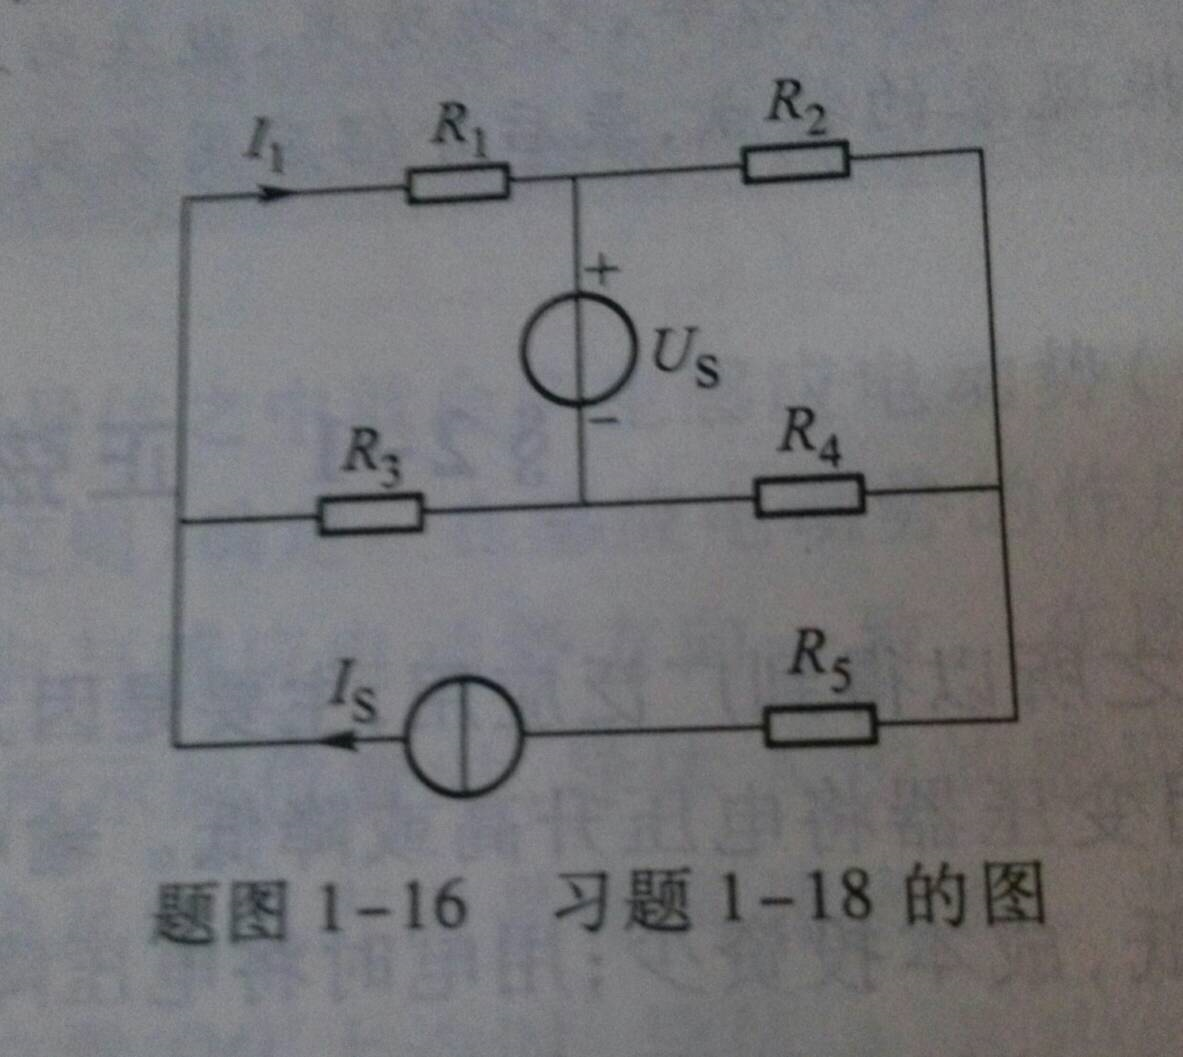 已知电路如图a所示，R1=1Ω，R2=2Ω，R3=3Ω，R4=4Ω，RL=5Ω，US=15V，试用戴